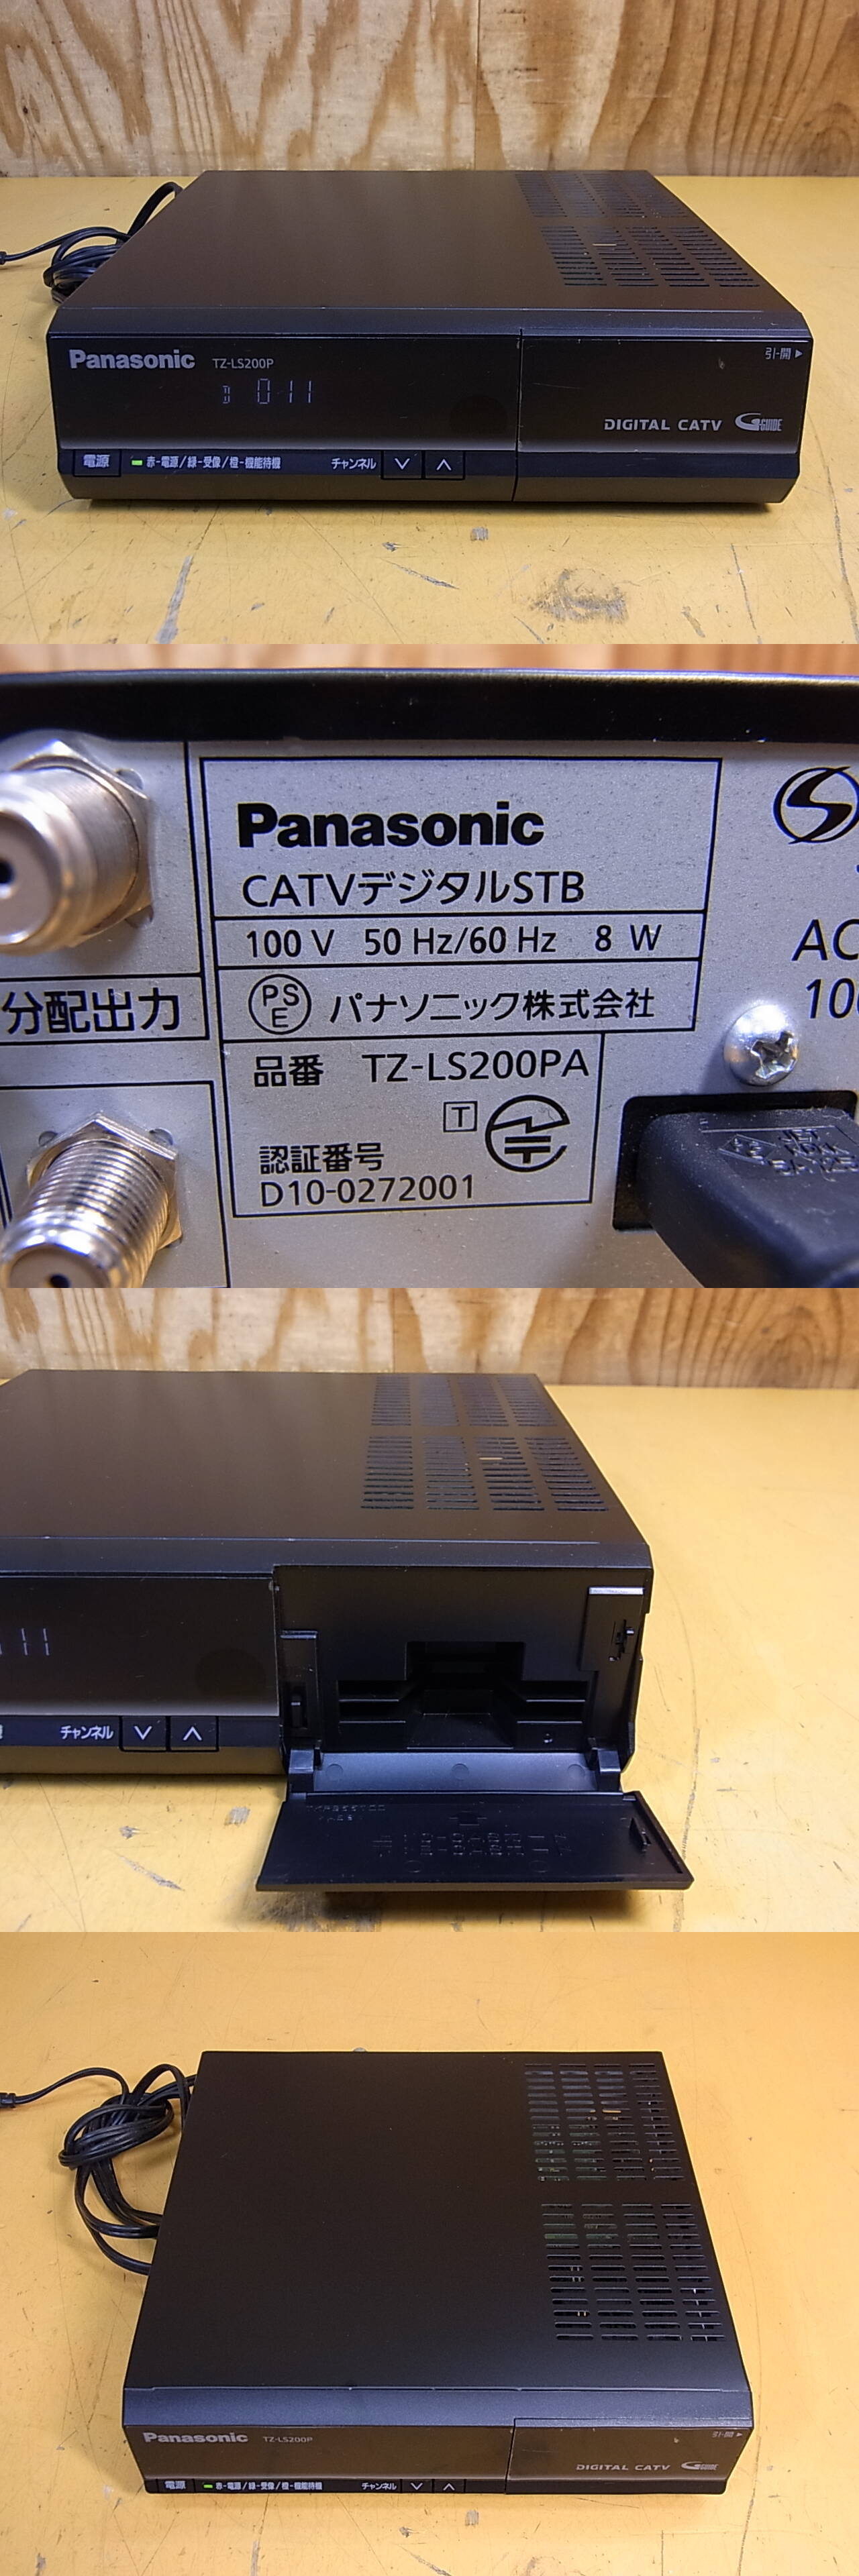 パナソニック TZ-LS200P CATVデジタルSTB 【ふるさと割】 - レコーダー